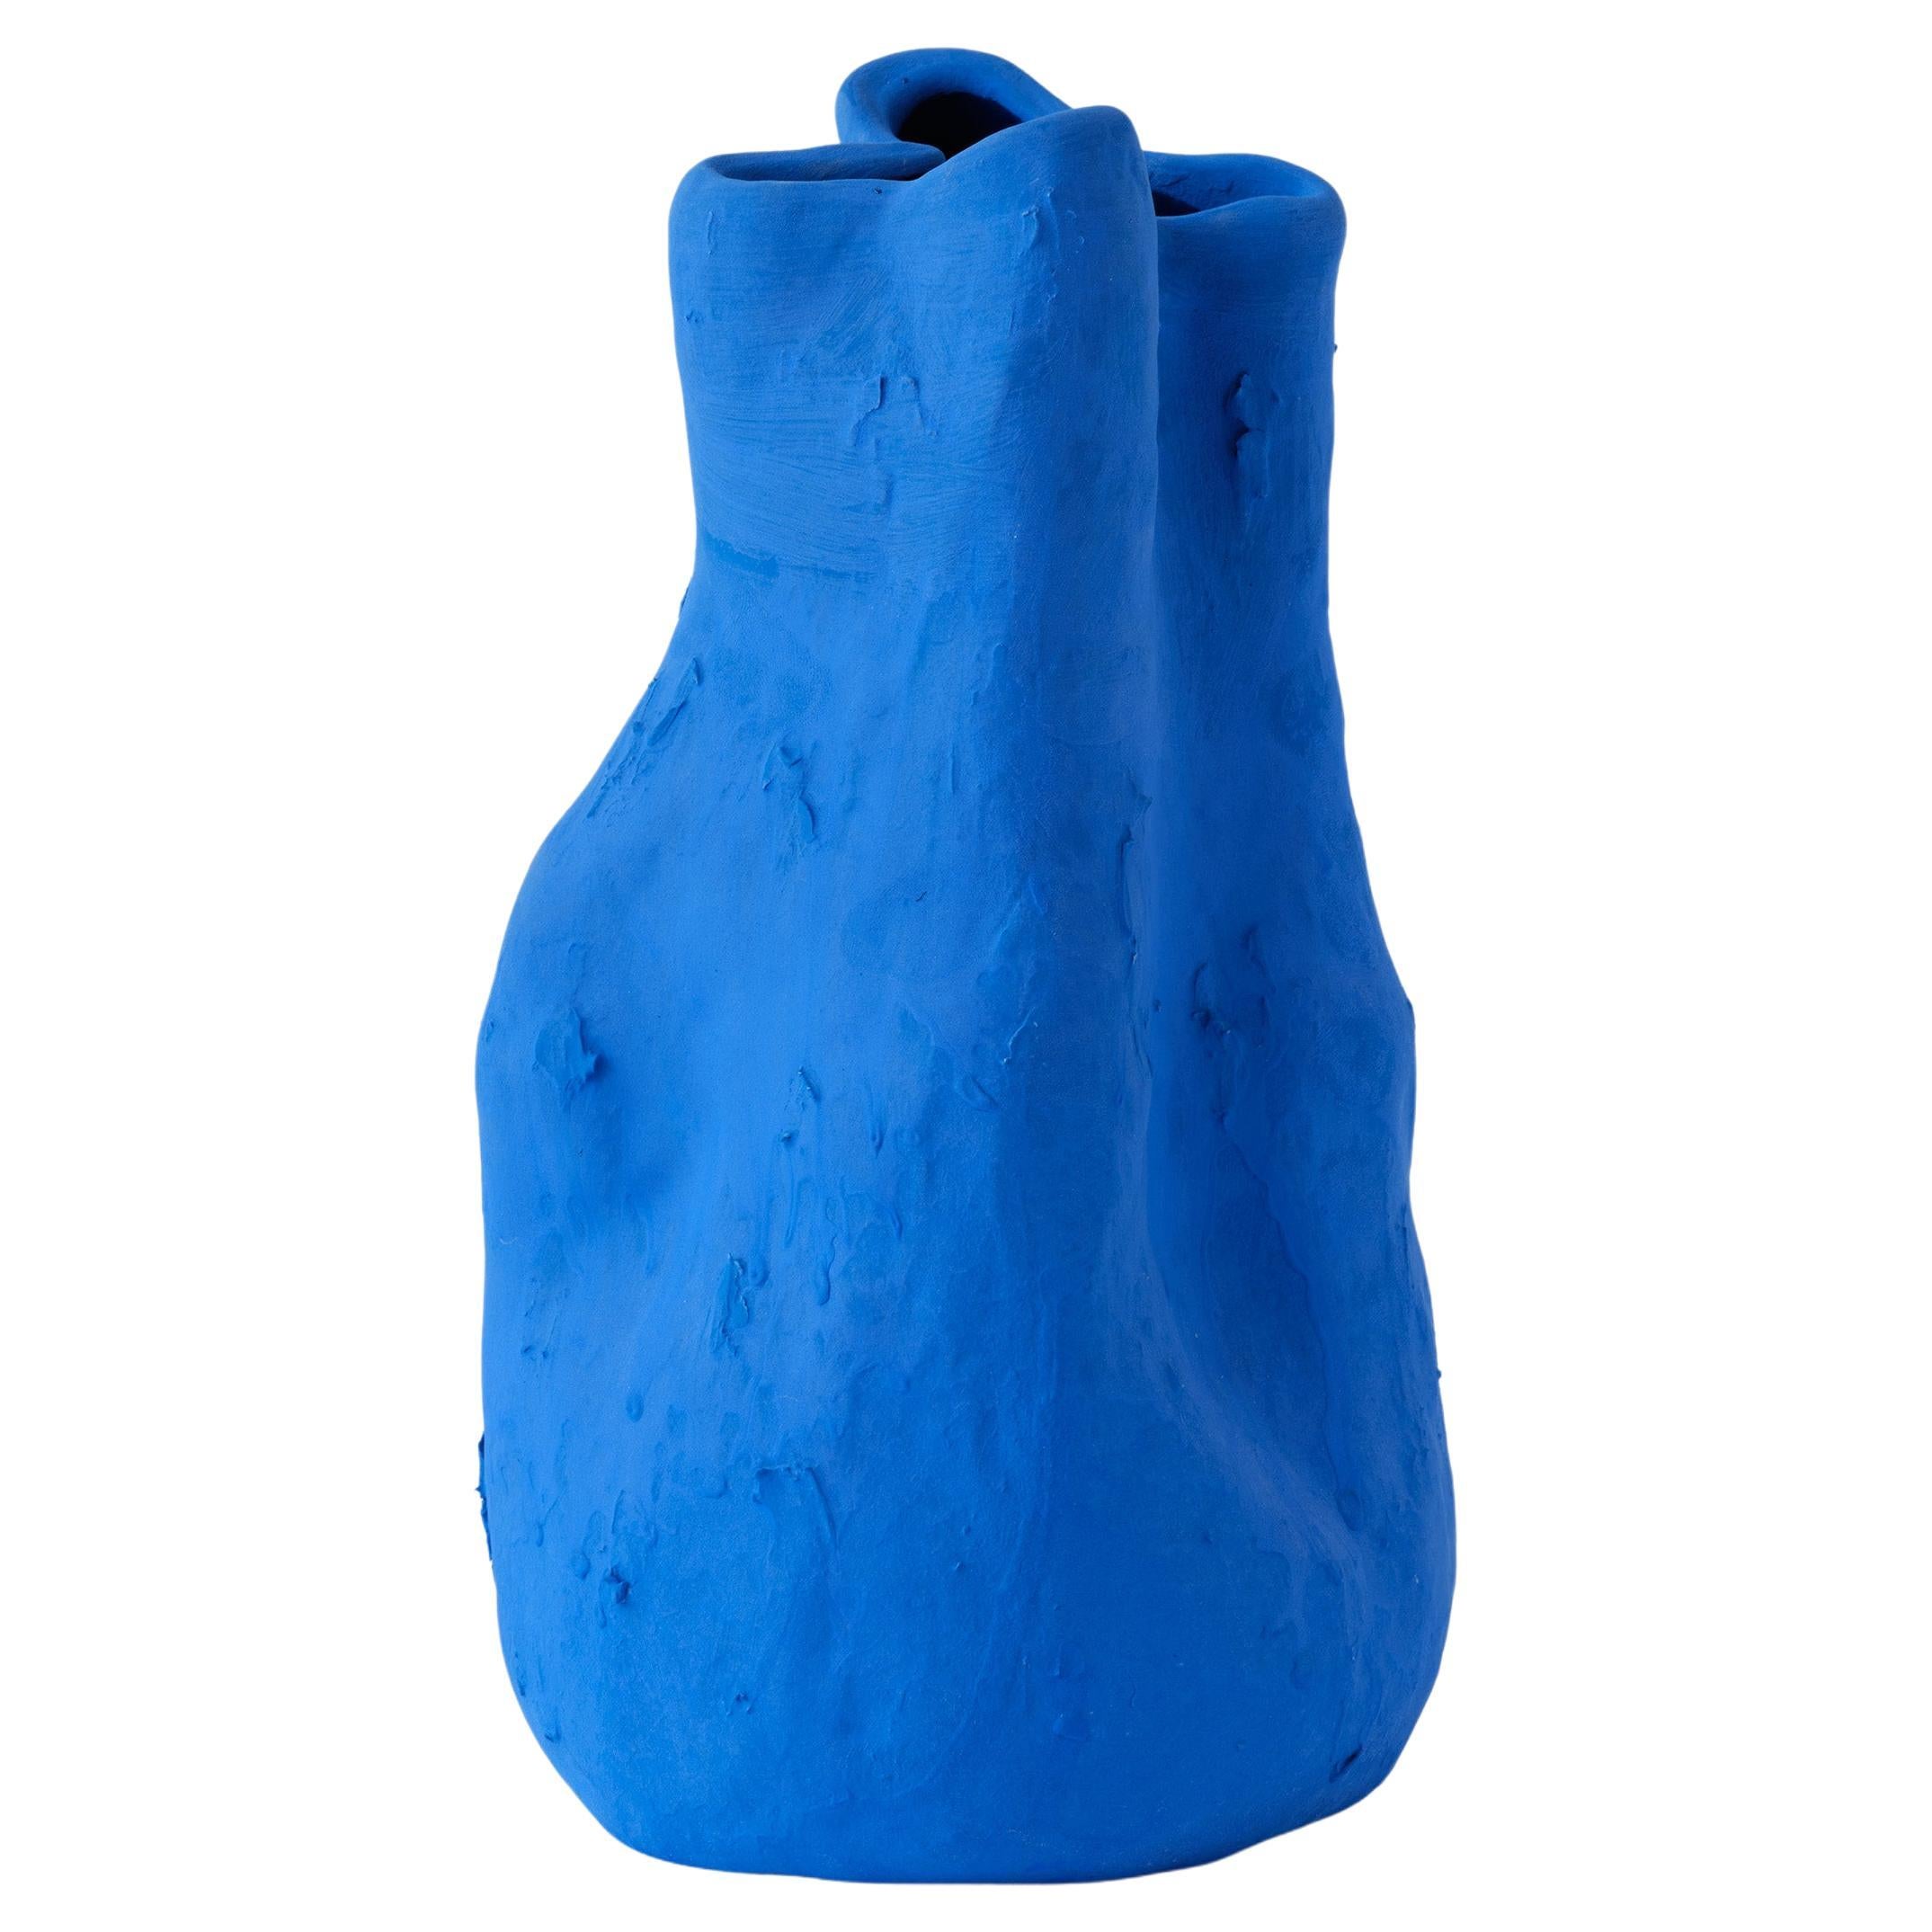 Handgefertigte mattblaue Georgia-Vase aus Porzellan